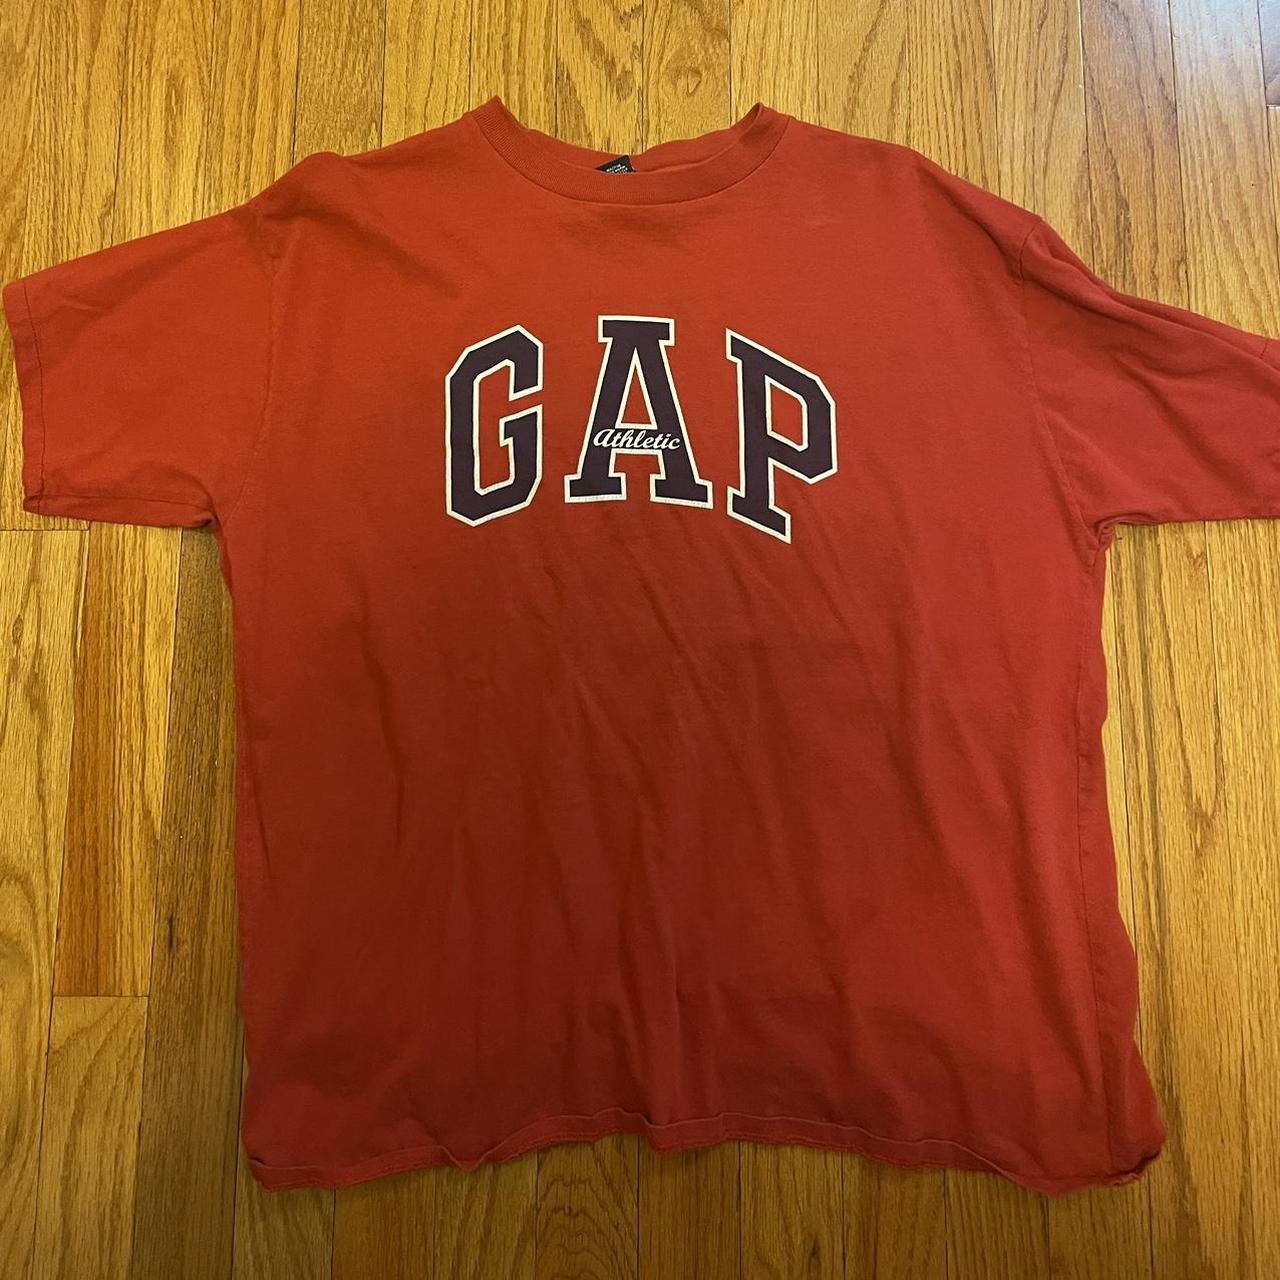 Large, Red Gap T-Shirt - Depop